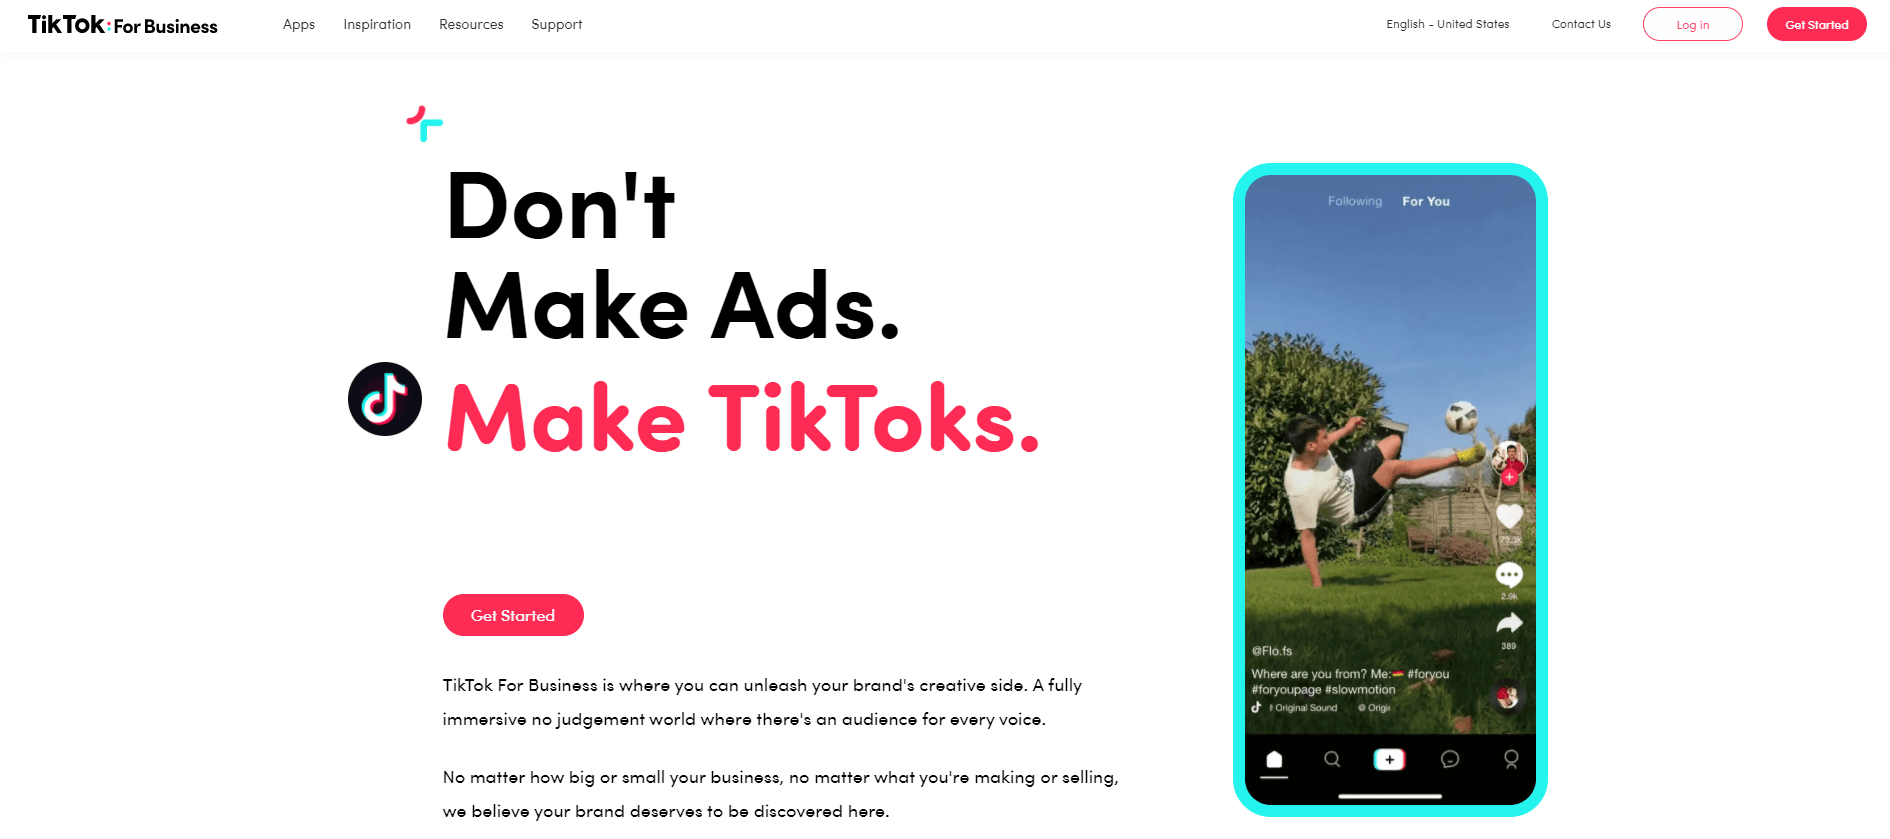 TikTok main message